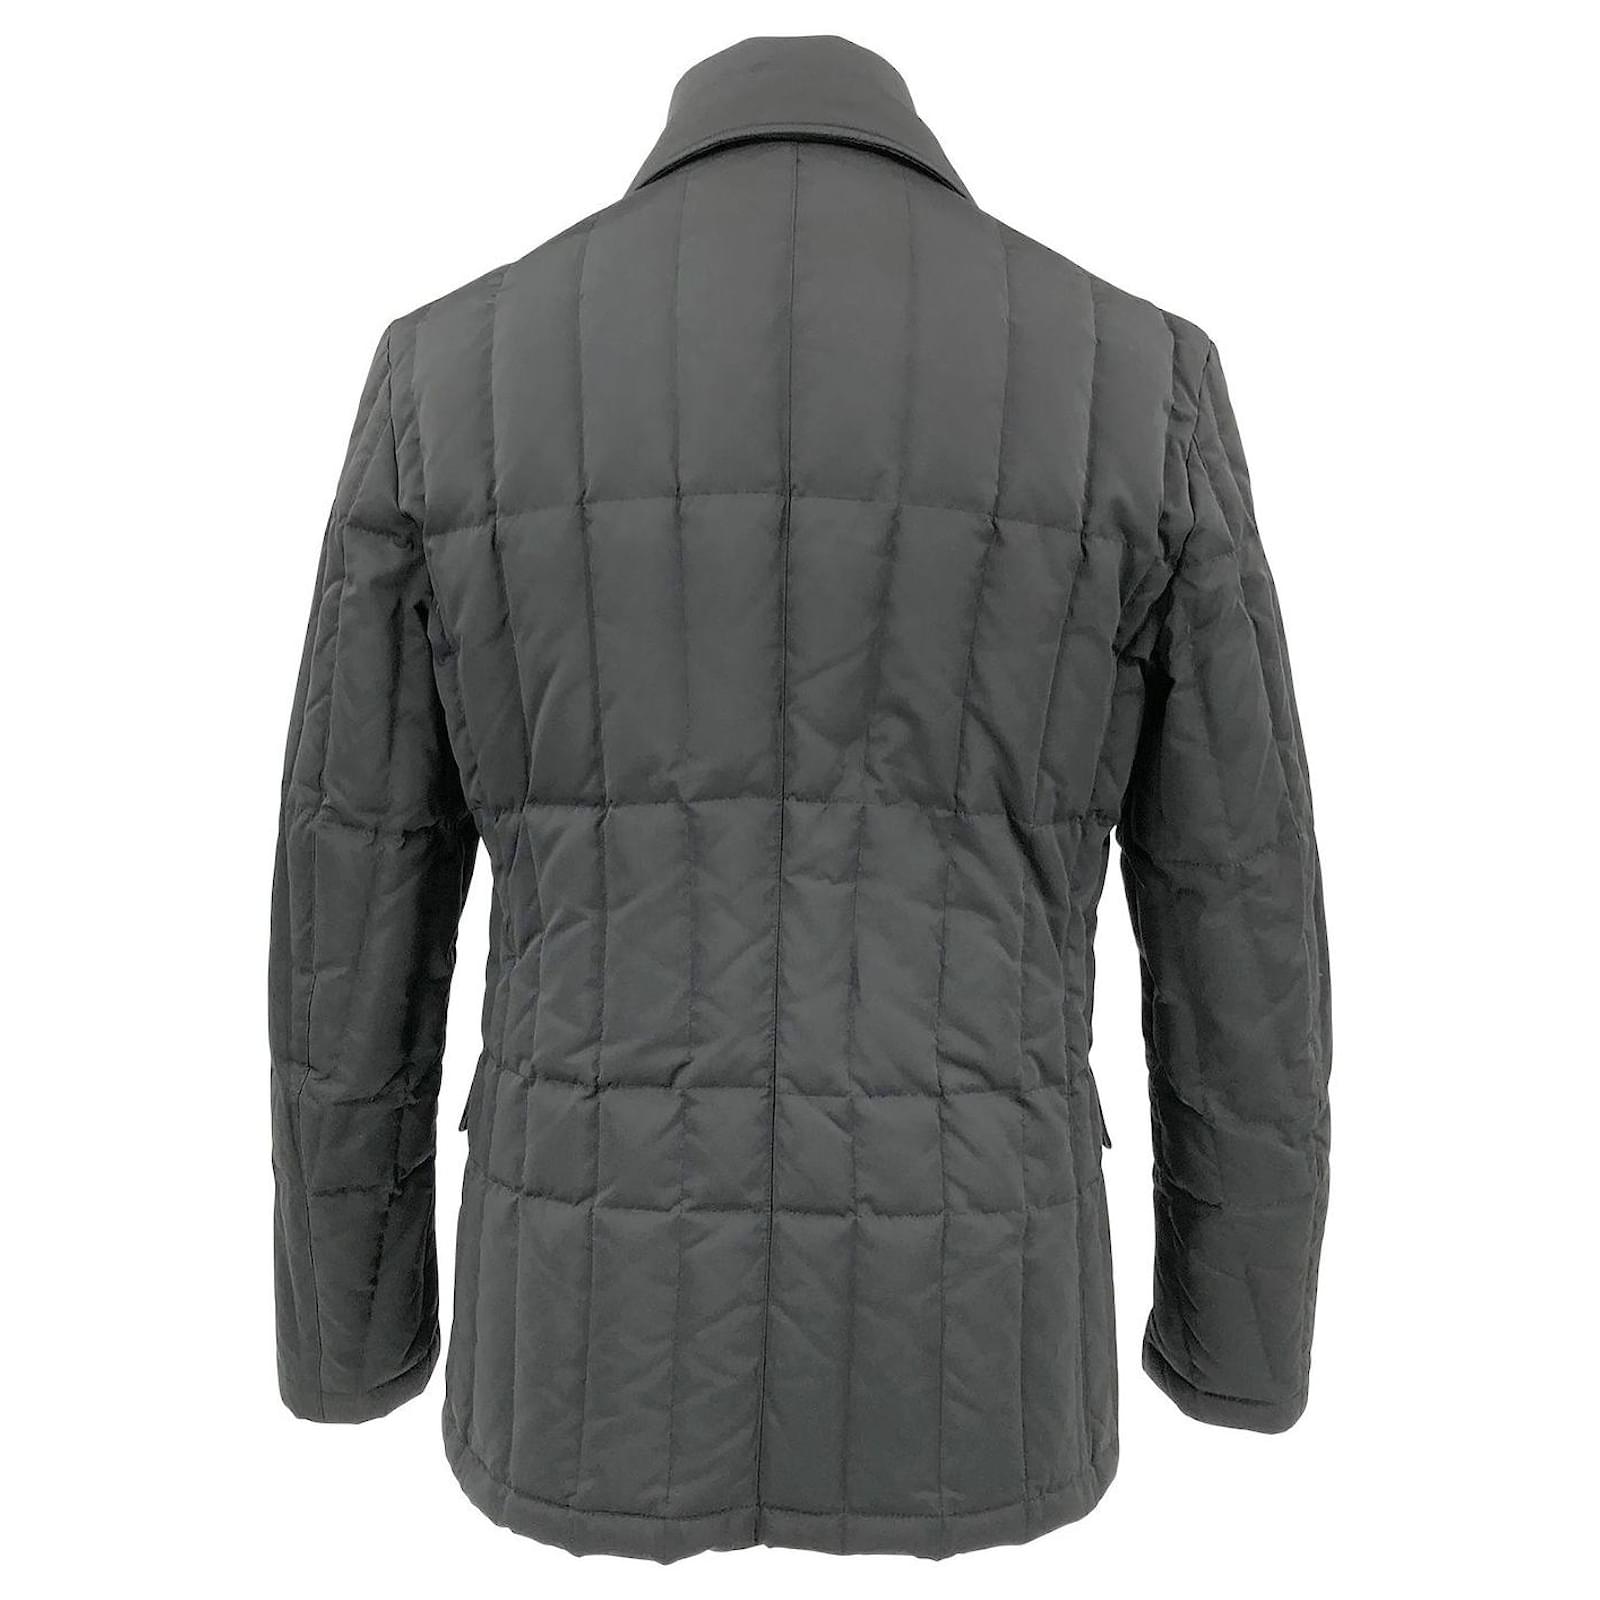 Corneliani Cornéliani jacket in black quilted fabric with down ...